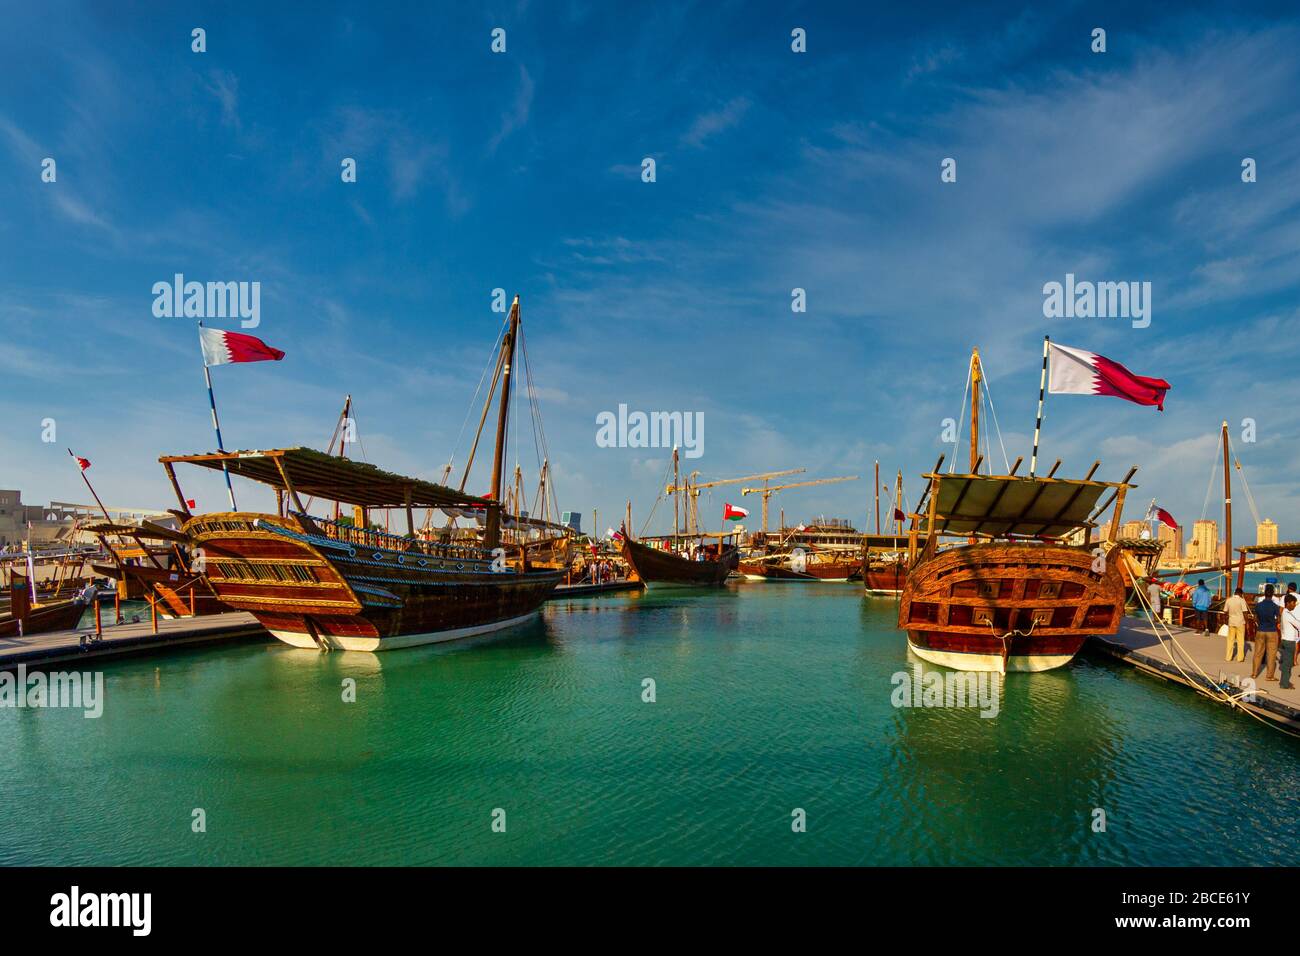 Tradizionali barche in legno (dhows) a Katara spiaggia Qatar vista luce del giorno con bandiera Qatar e nuvole nel cielo Foto Stock